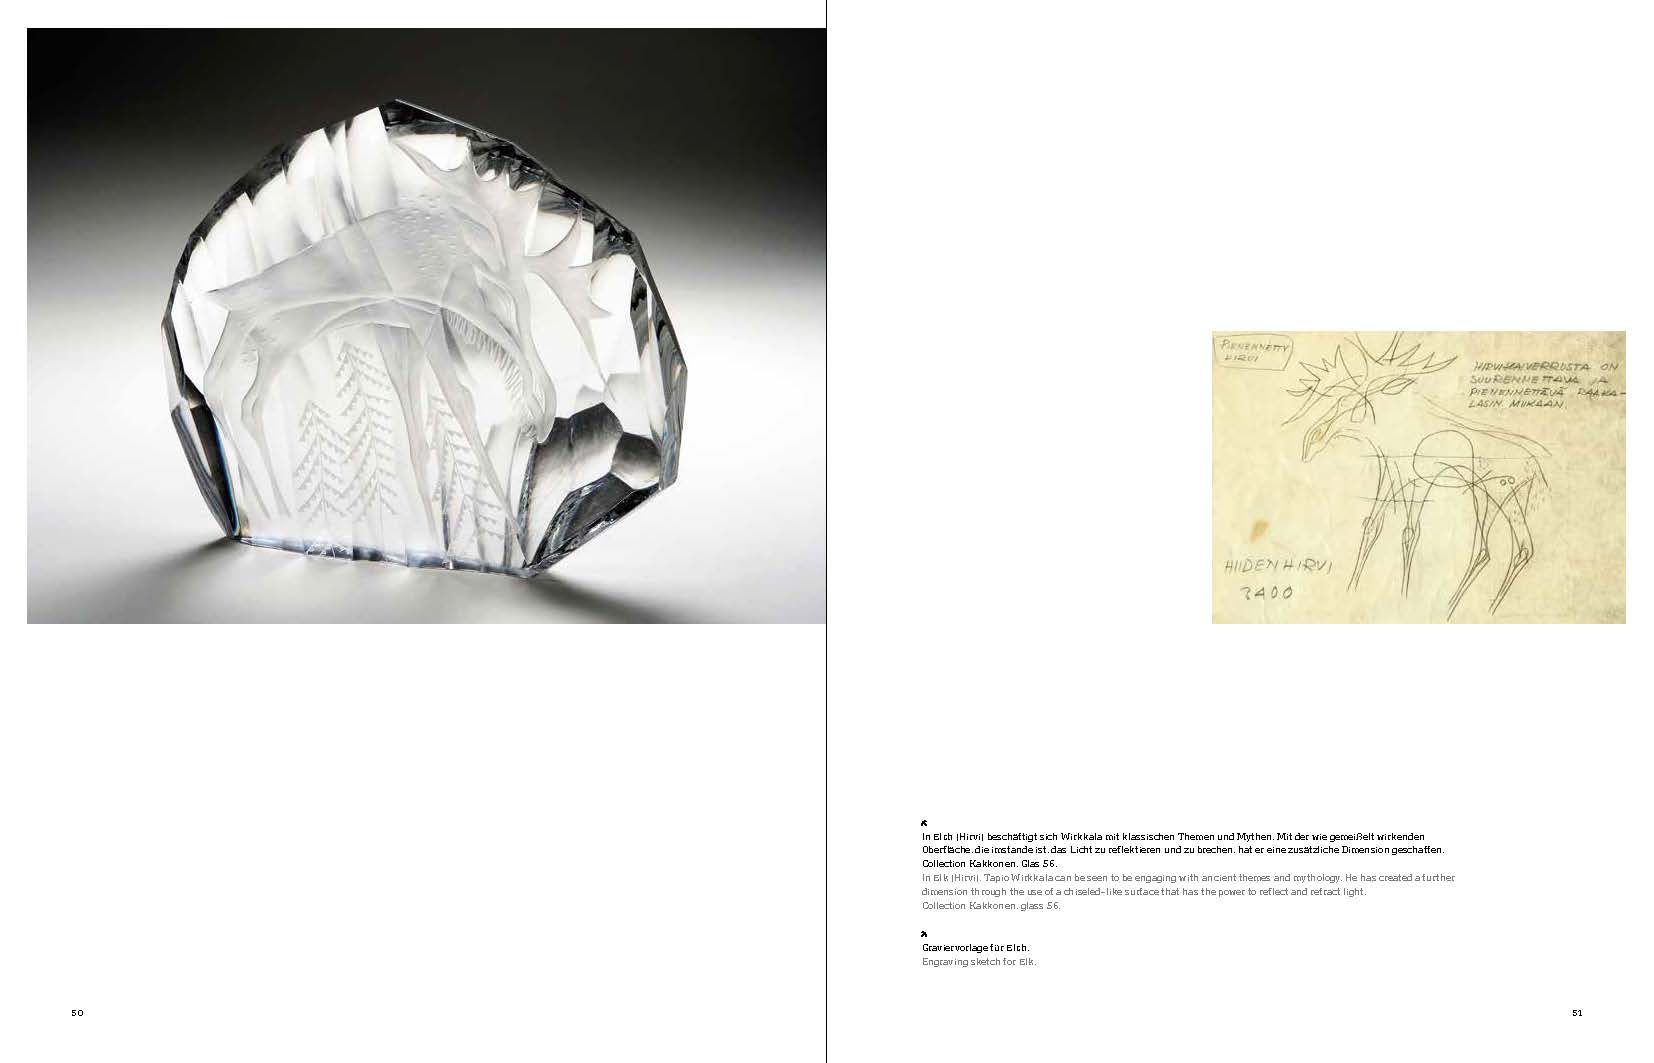 Tapio Wirkkala | Finnisches Design – Glas und Silber